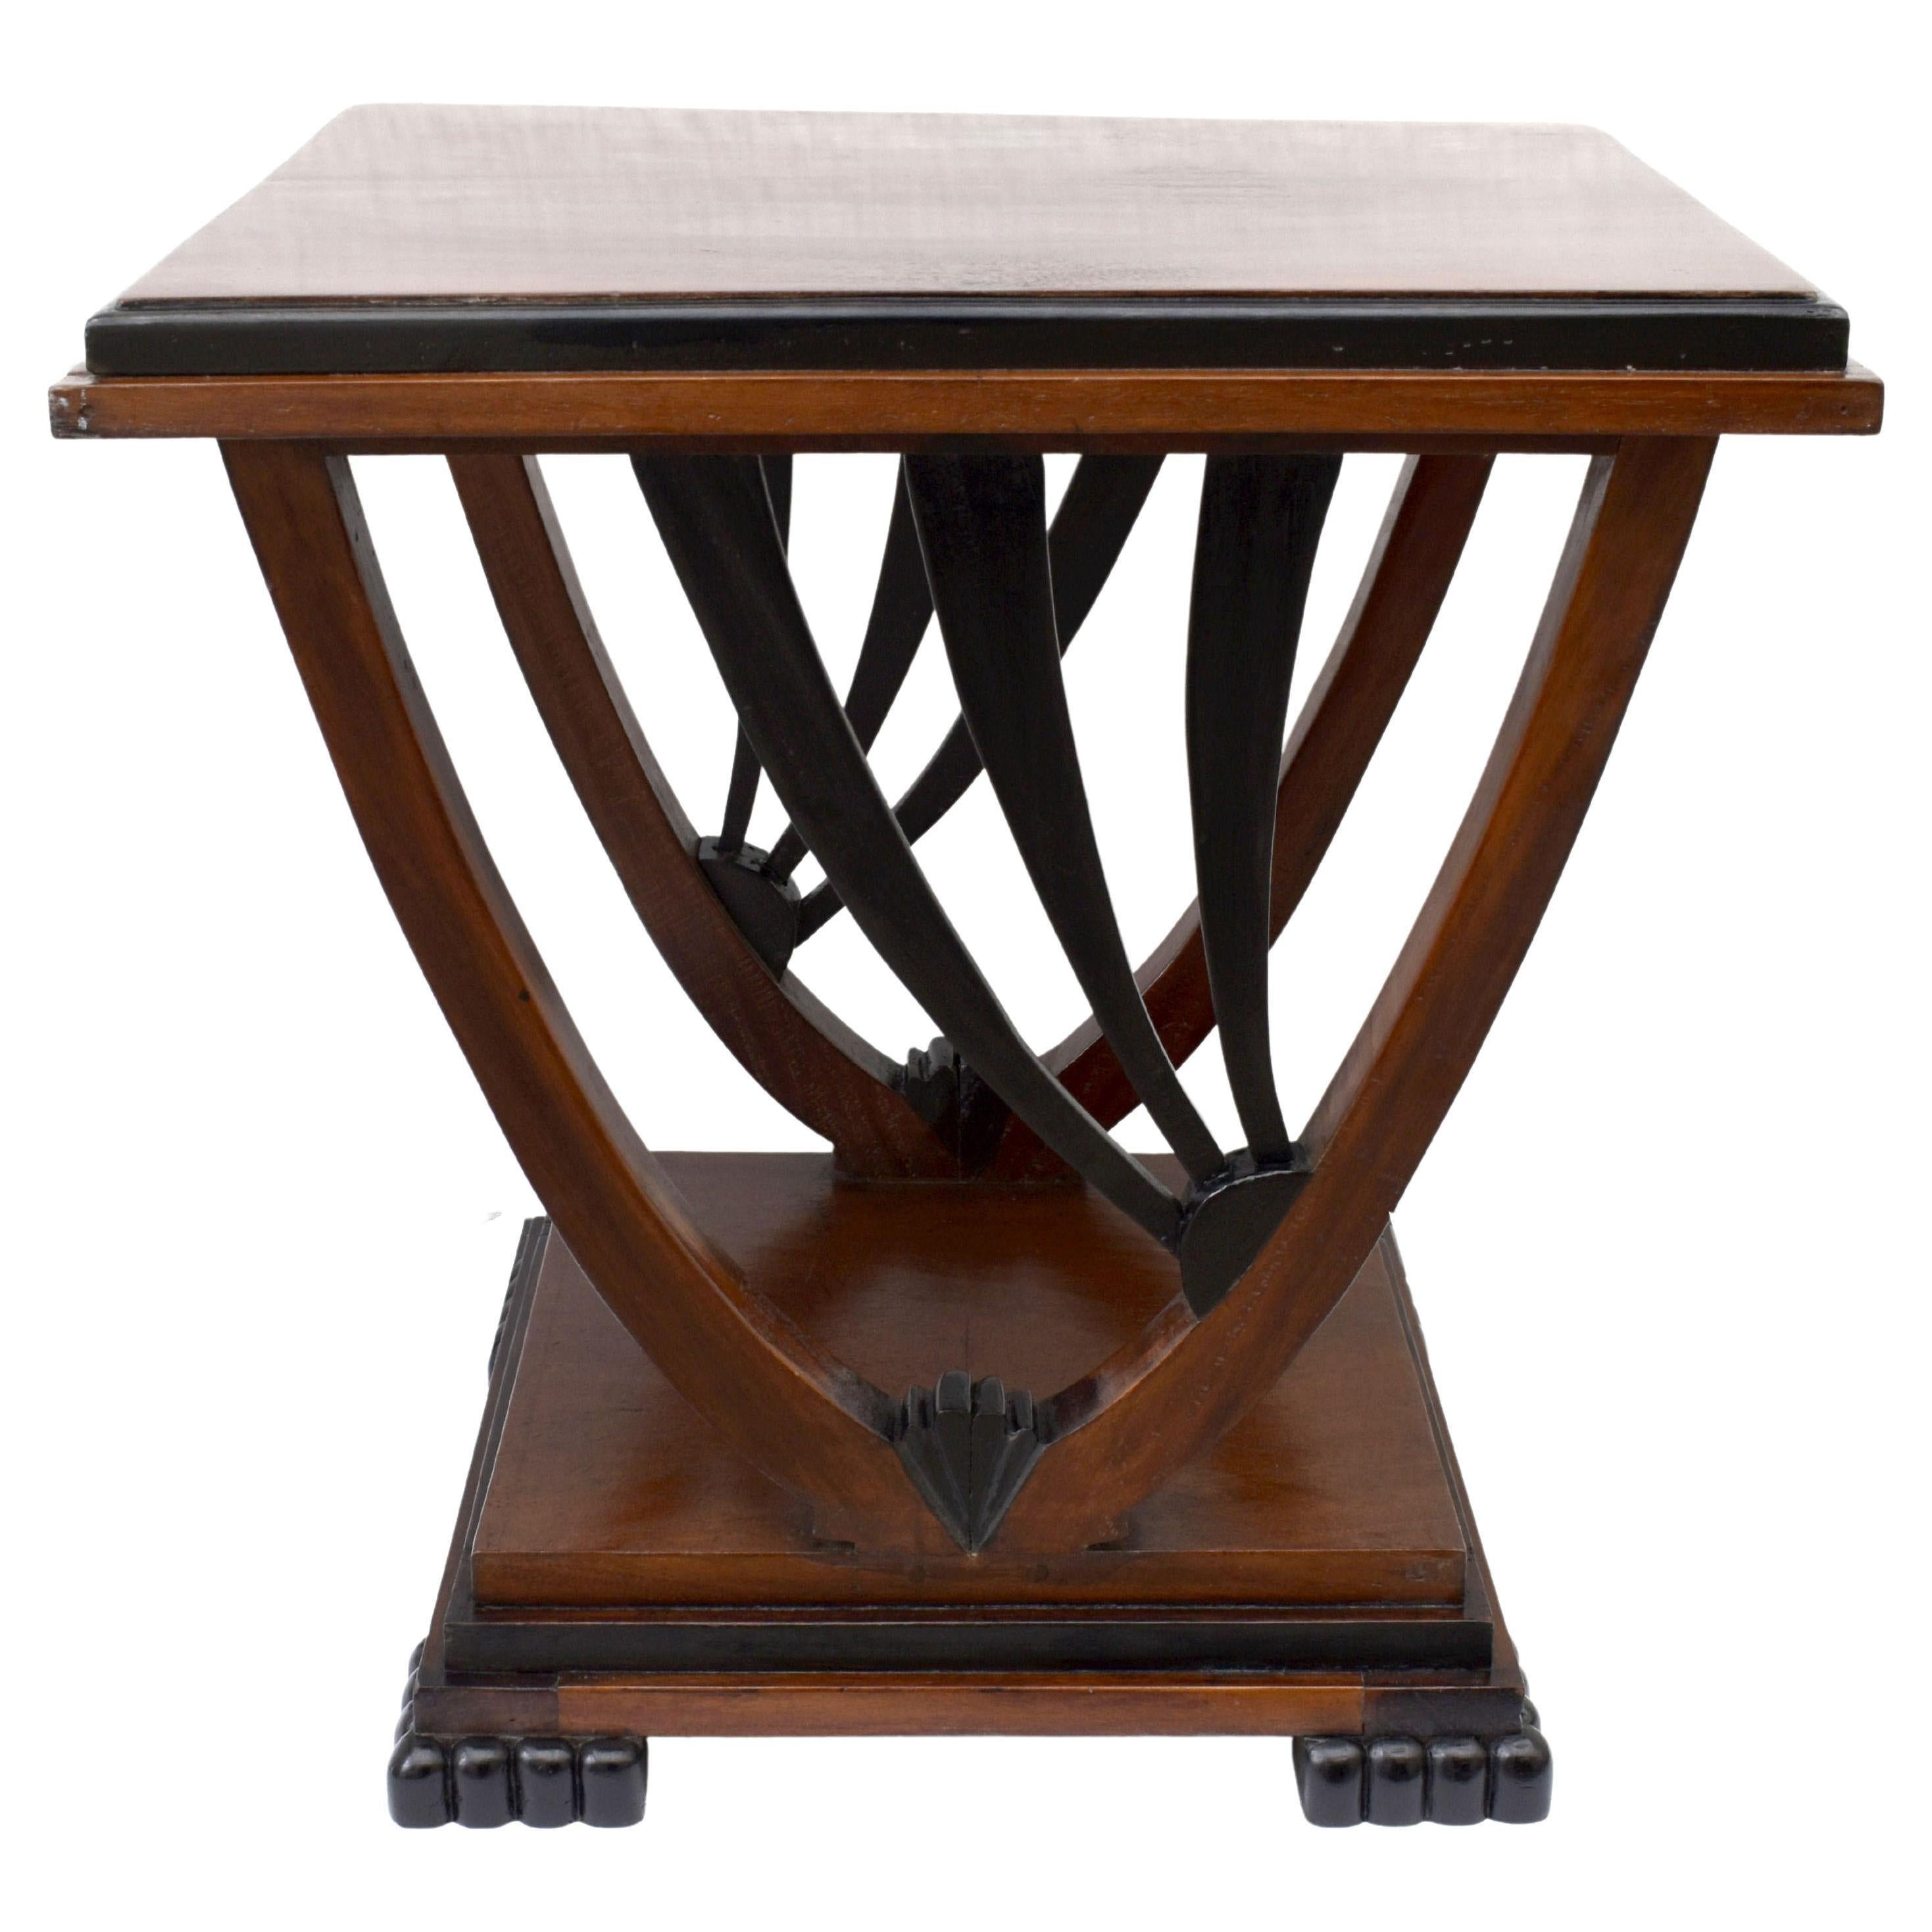 Nous vous proposons cette table d'appoint Art Deco emblématique en acajou massif avec des accents ébonisés. Fabriquée dans les années 1930 et très probablement d'origine anglaise, cette jolie pièce présente toutes les caractéristiques du design déco